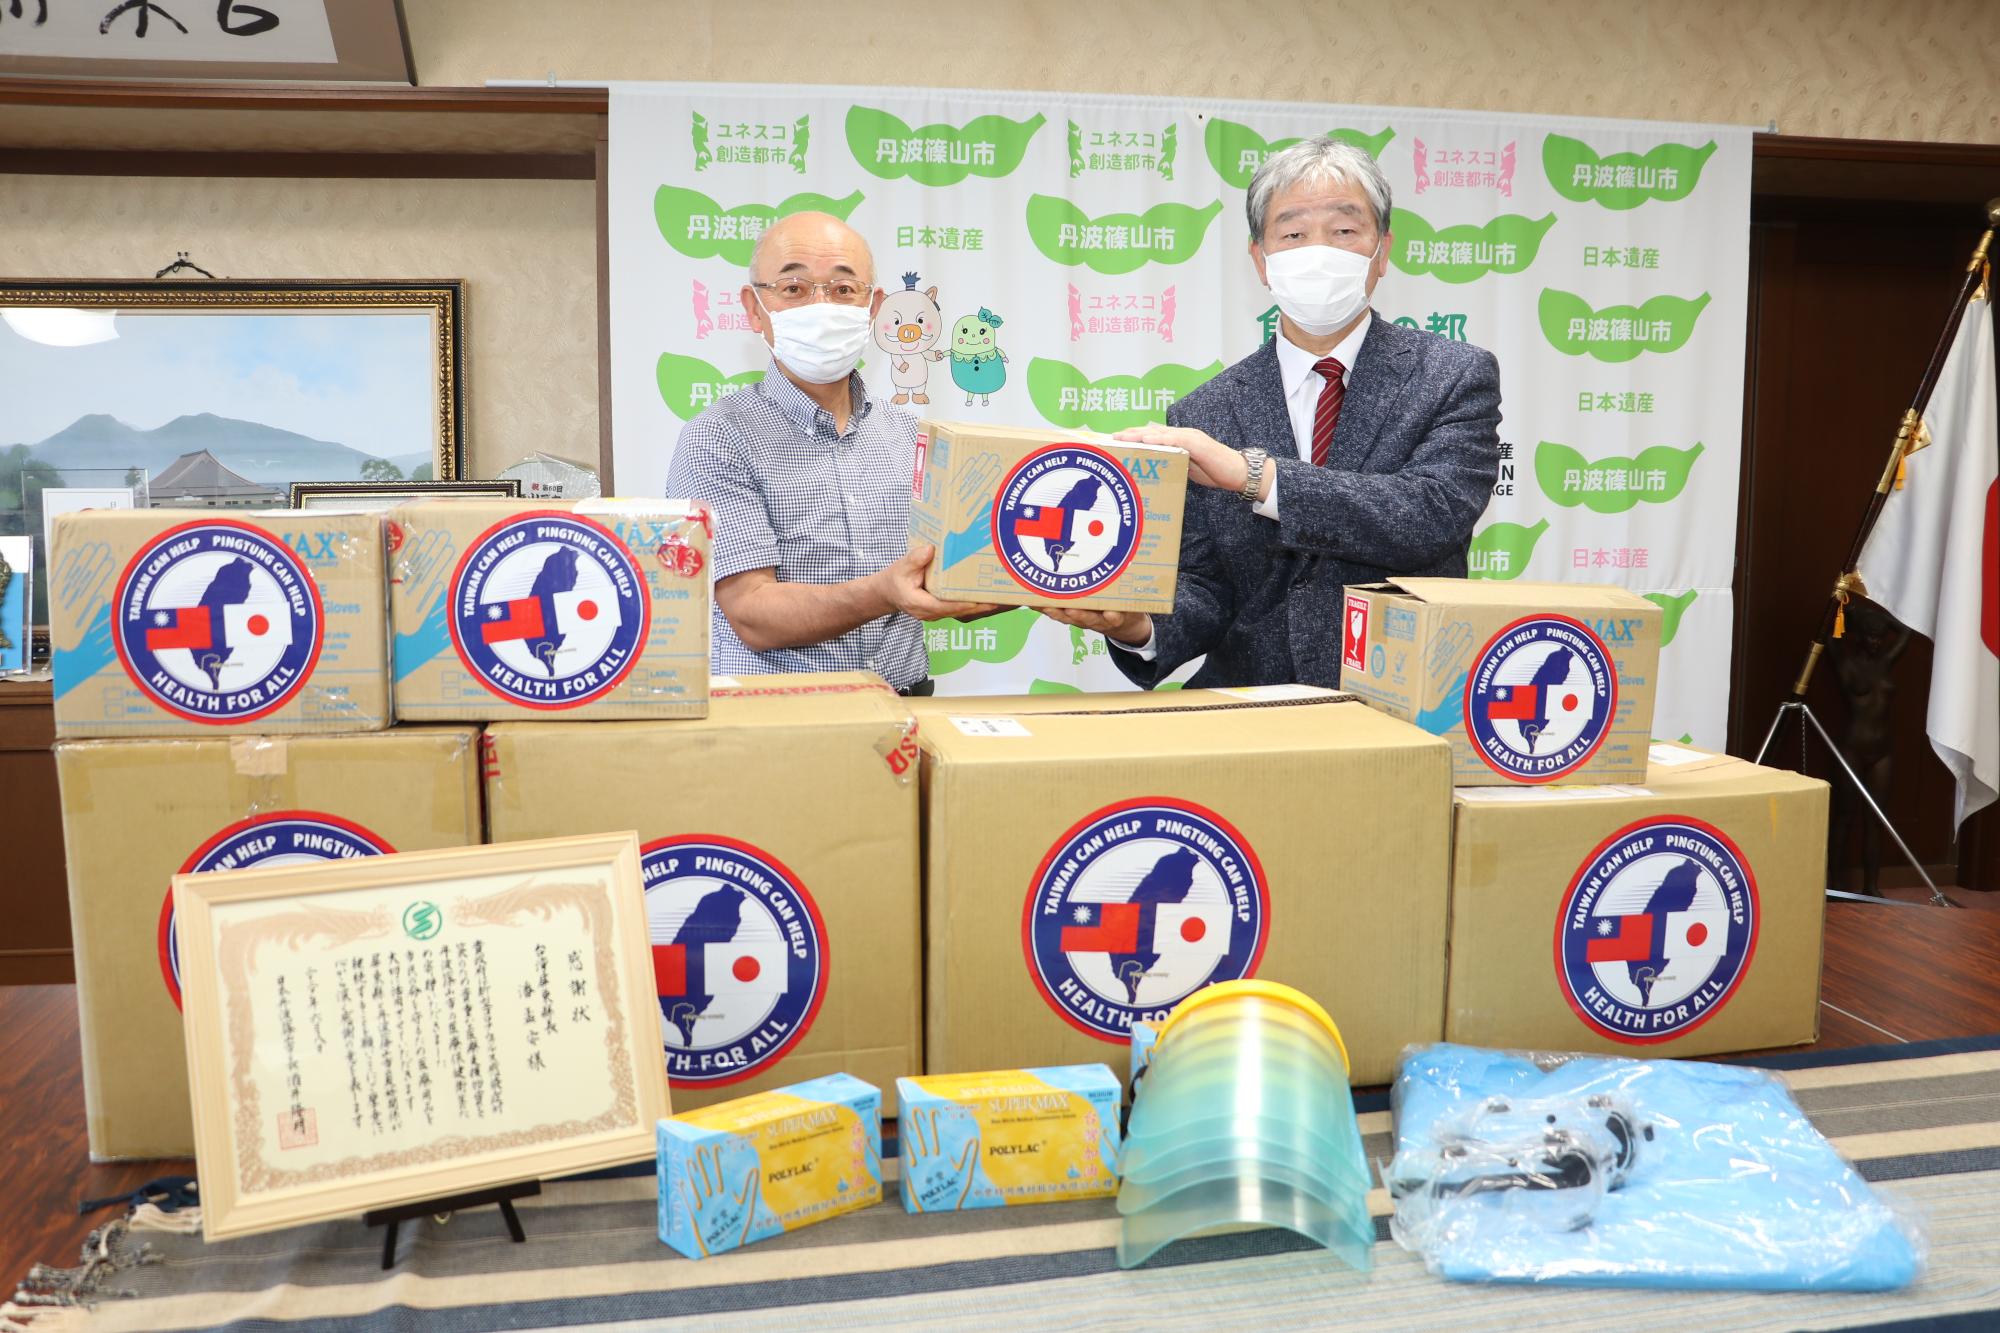 酒井市長と芦田会長が、台湾から届いた支援物資を手にとっている周りには感謝状と手袋、ゴーグル、フェイスシールド、防護服がある